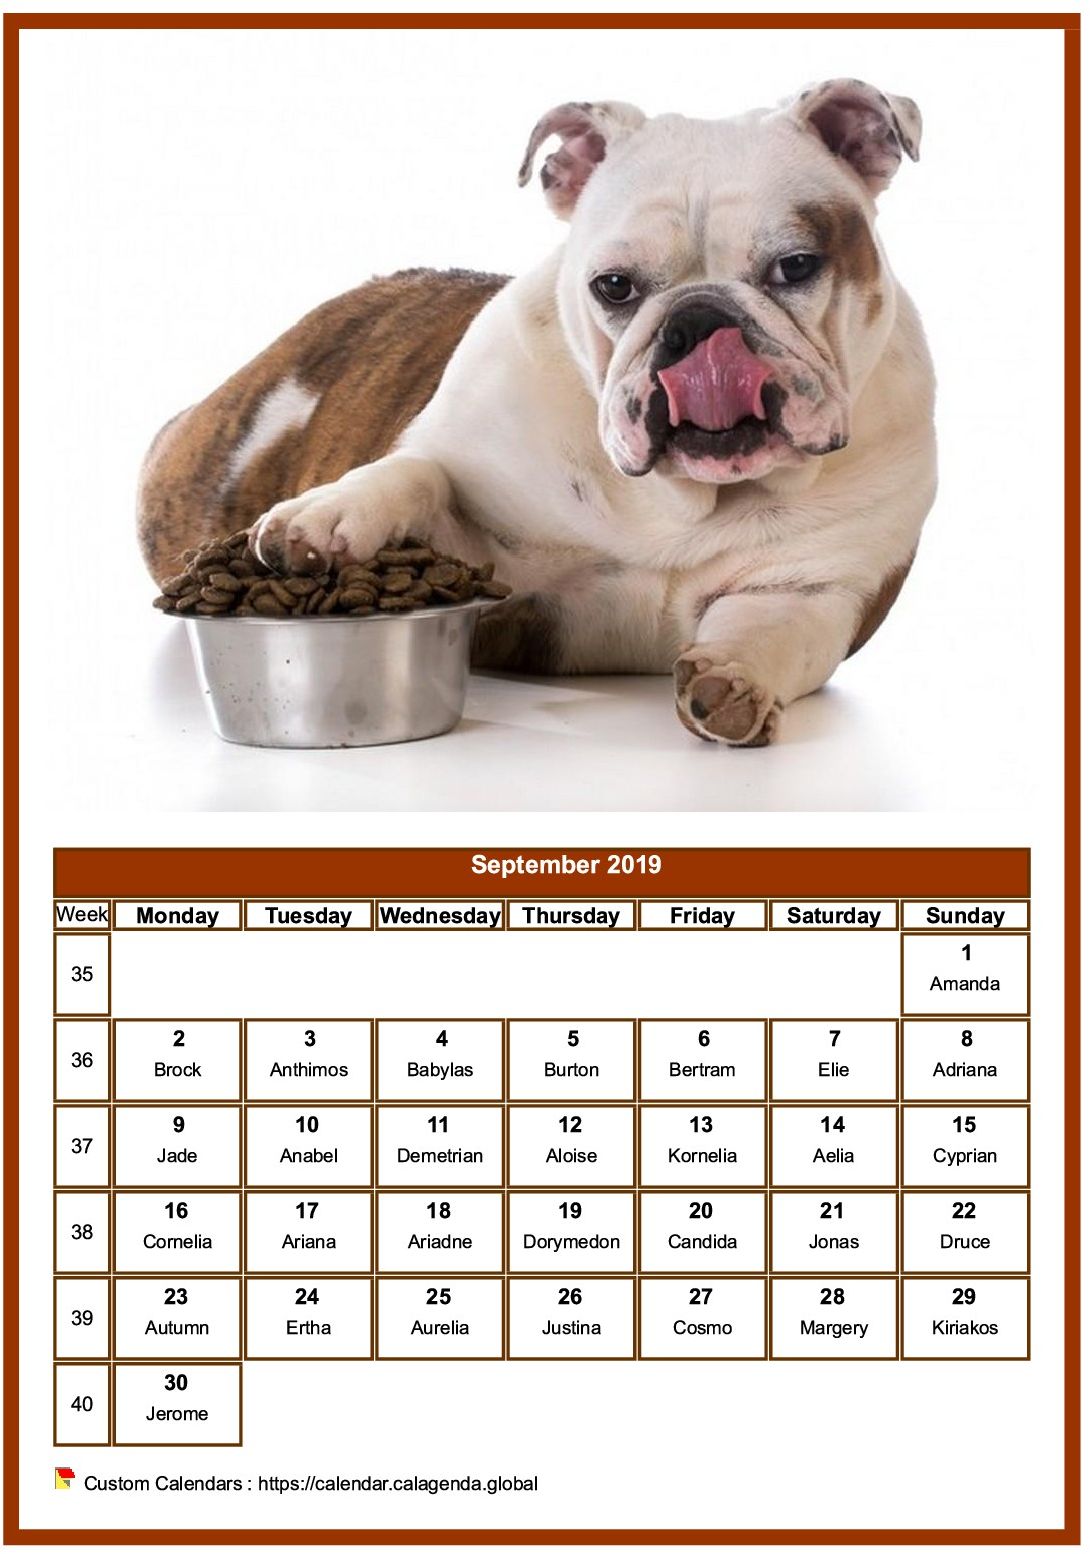 Calendar September 2019 dogs